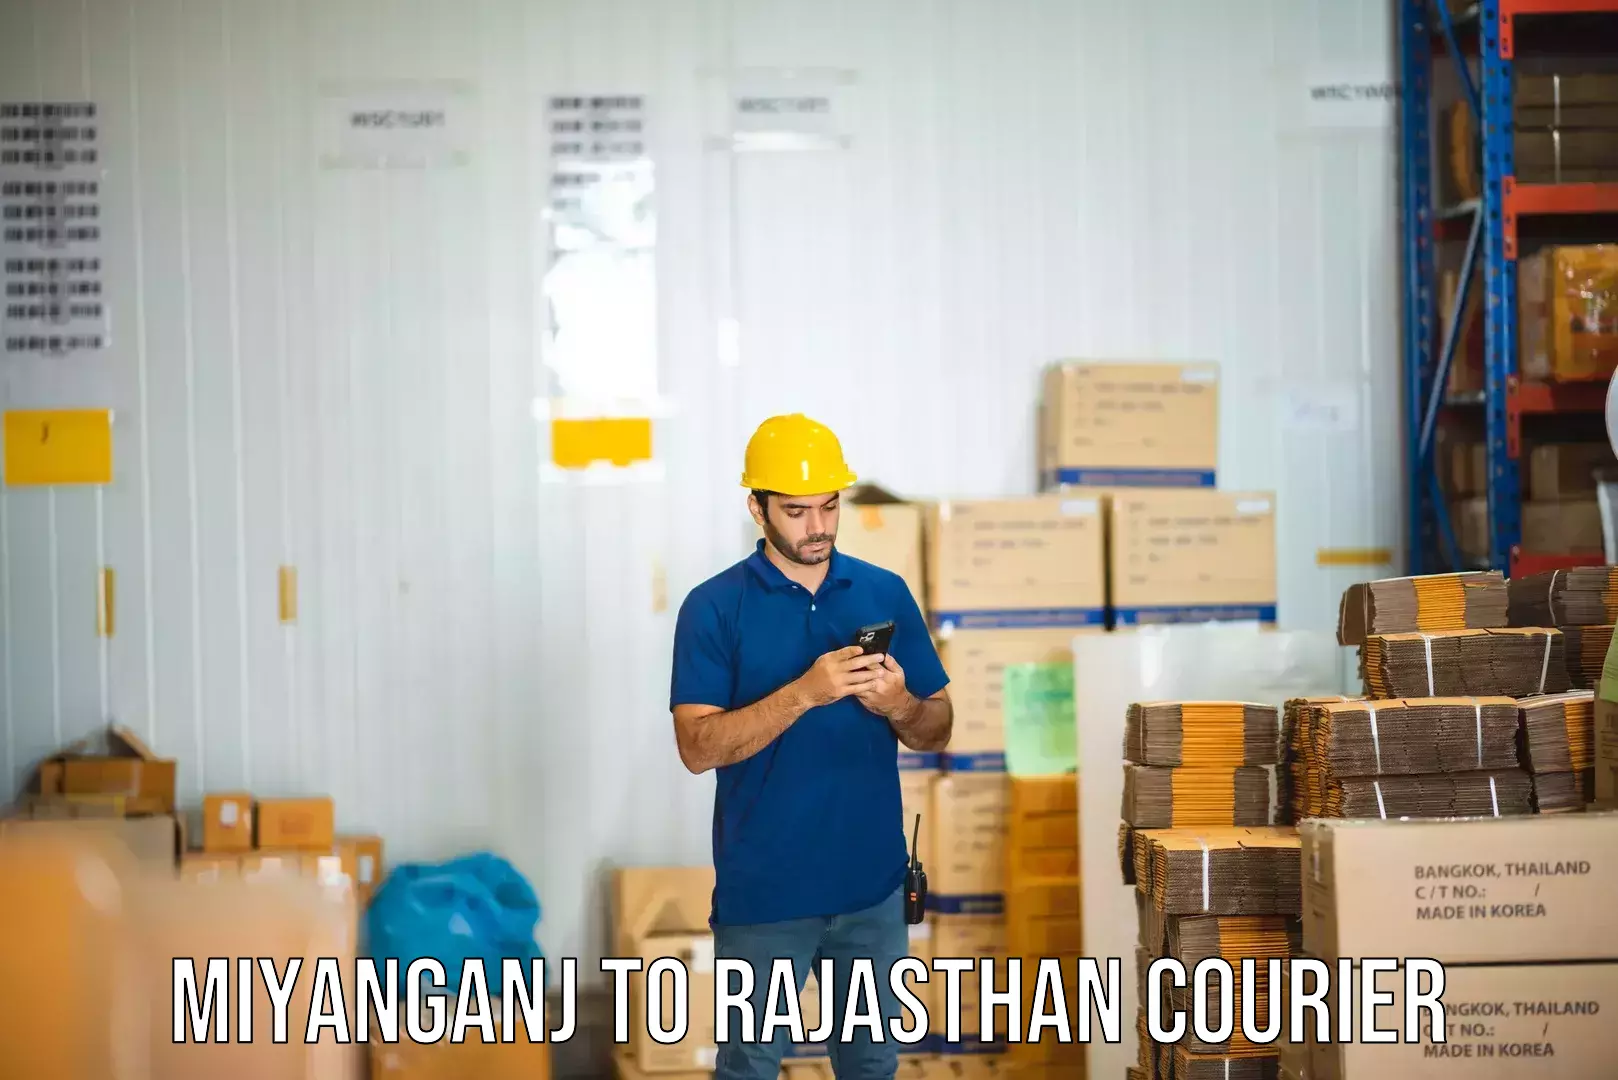 Global freight services Miyanganj to Kaman